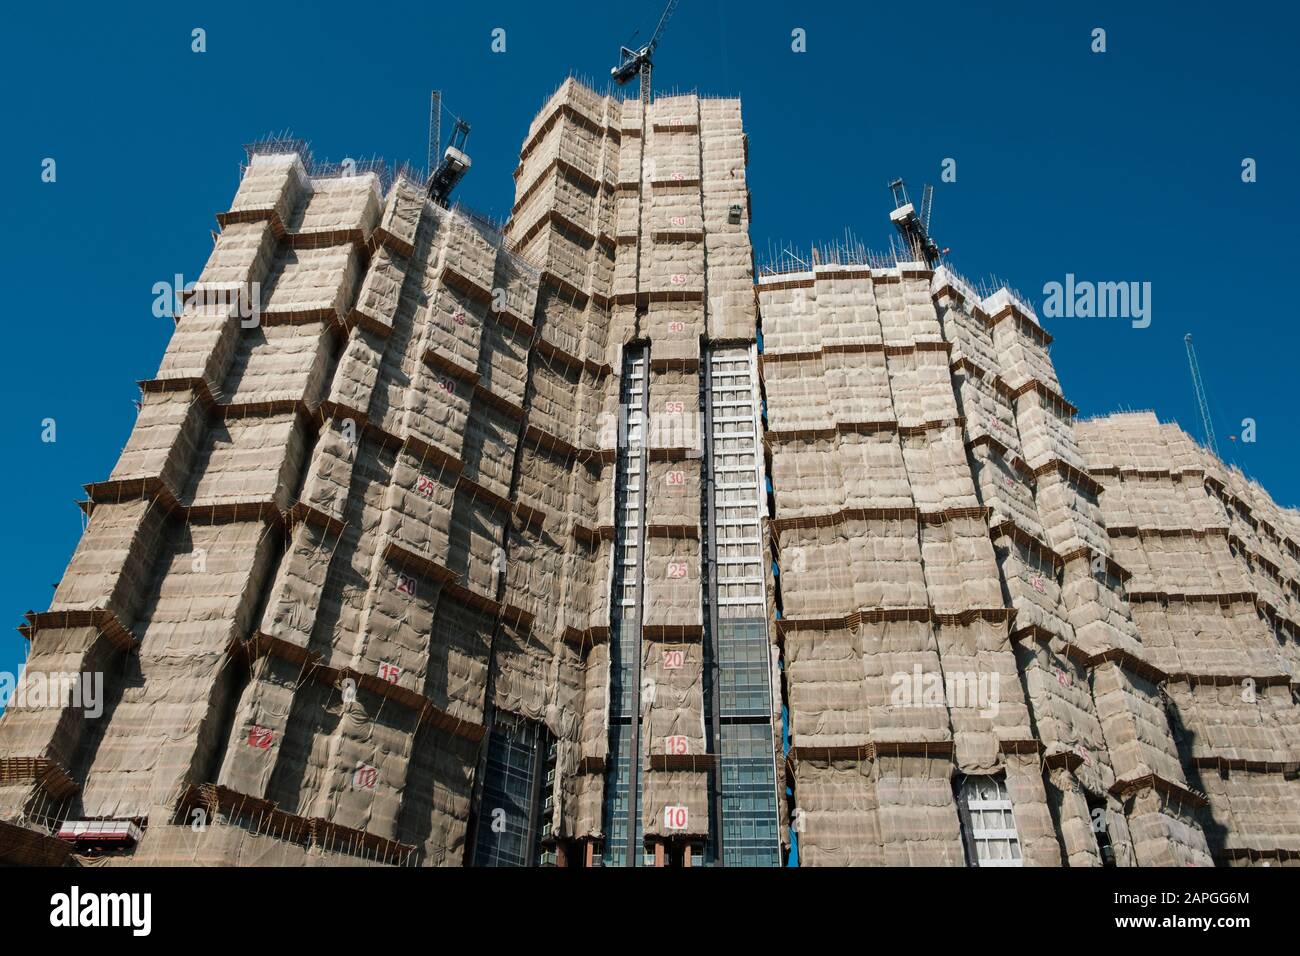 Bamboo scaffolding on building facade, bamboo pole framework, Stock Photo